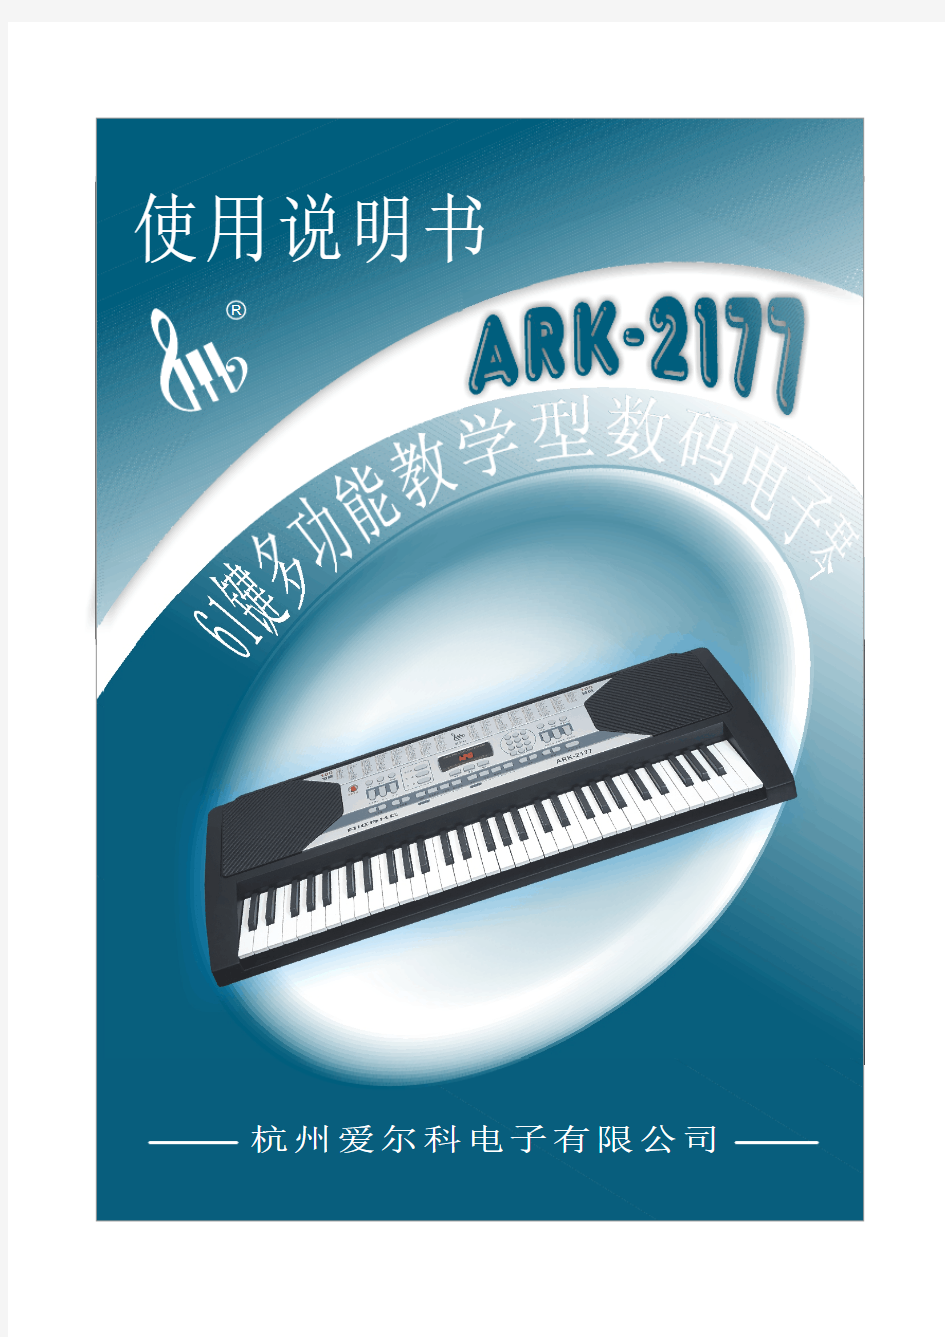 爱尔科电子琴ARK-2177中文说明书